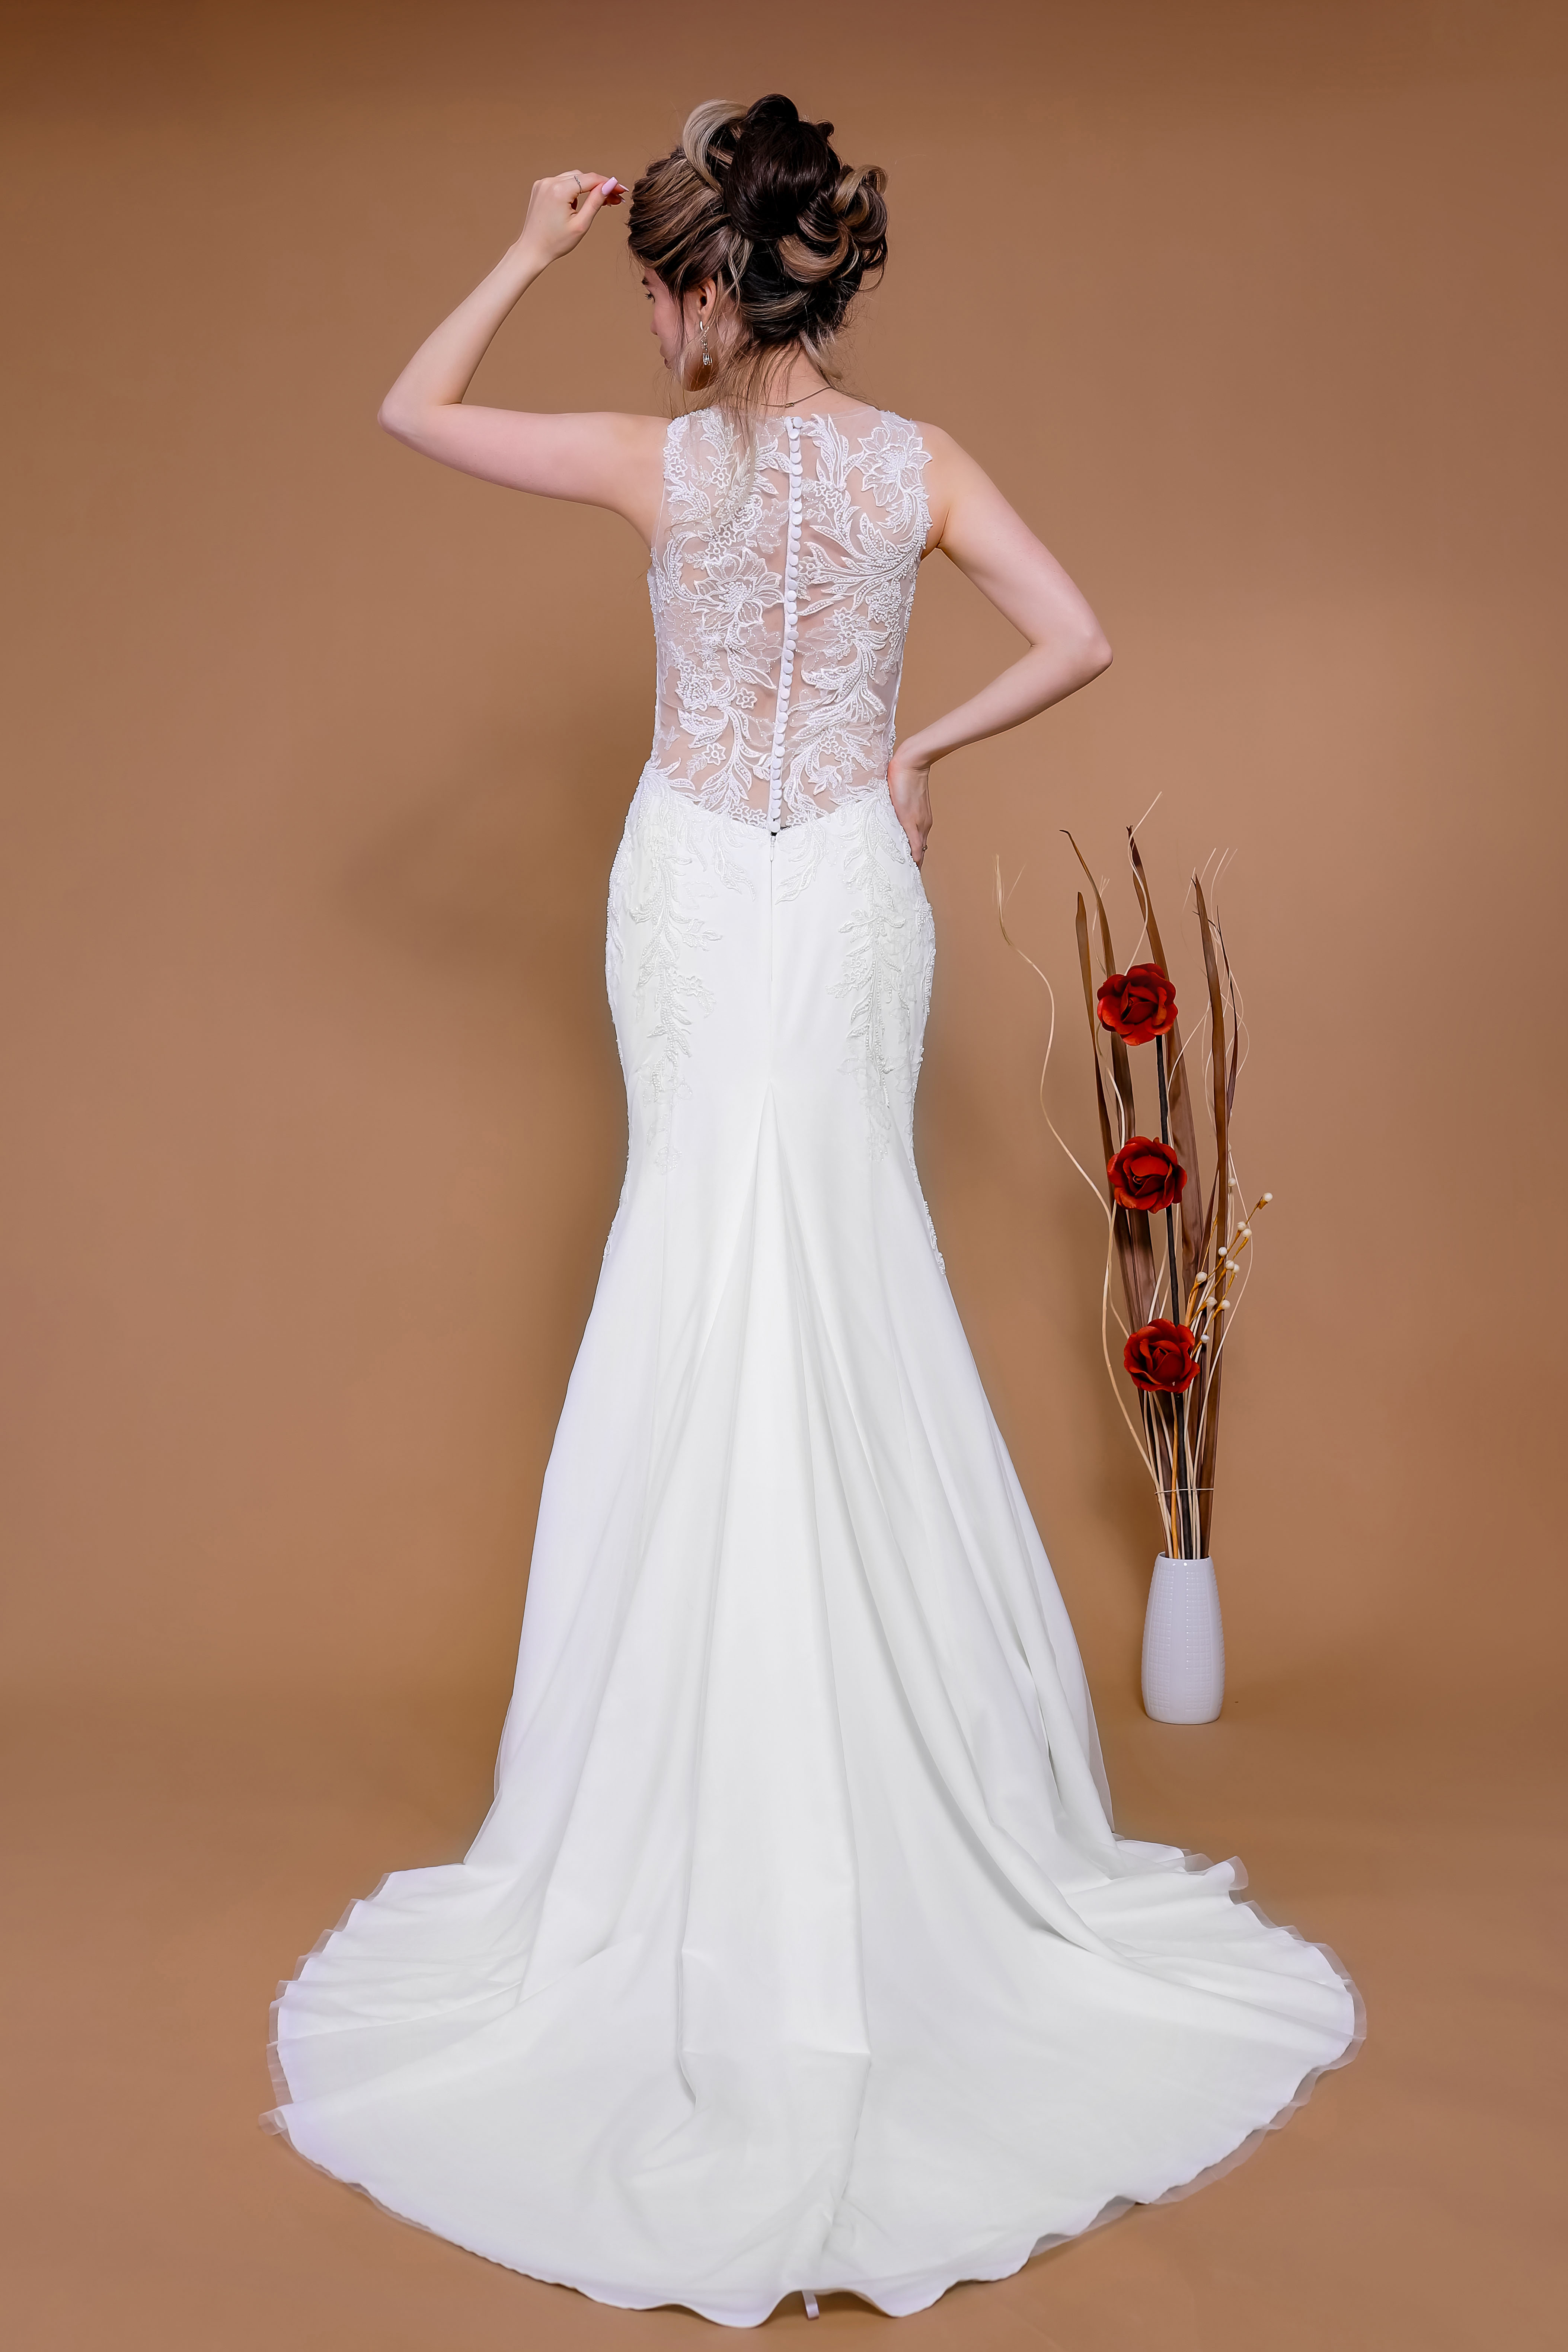 Schantal Brautkleid aus der Kollektion „Traum“, Modell 14183. Foto 4